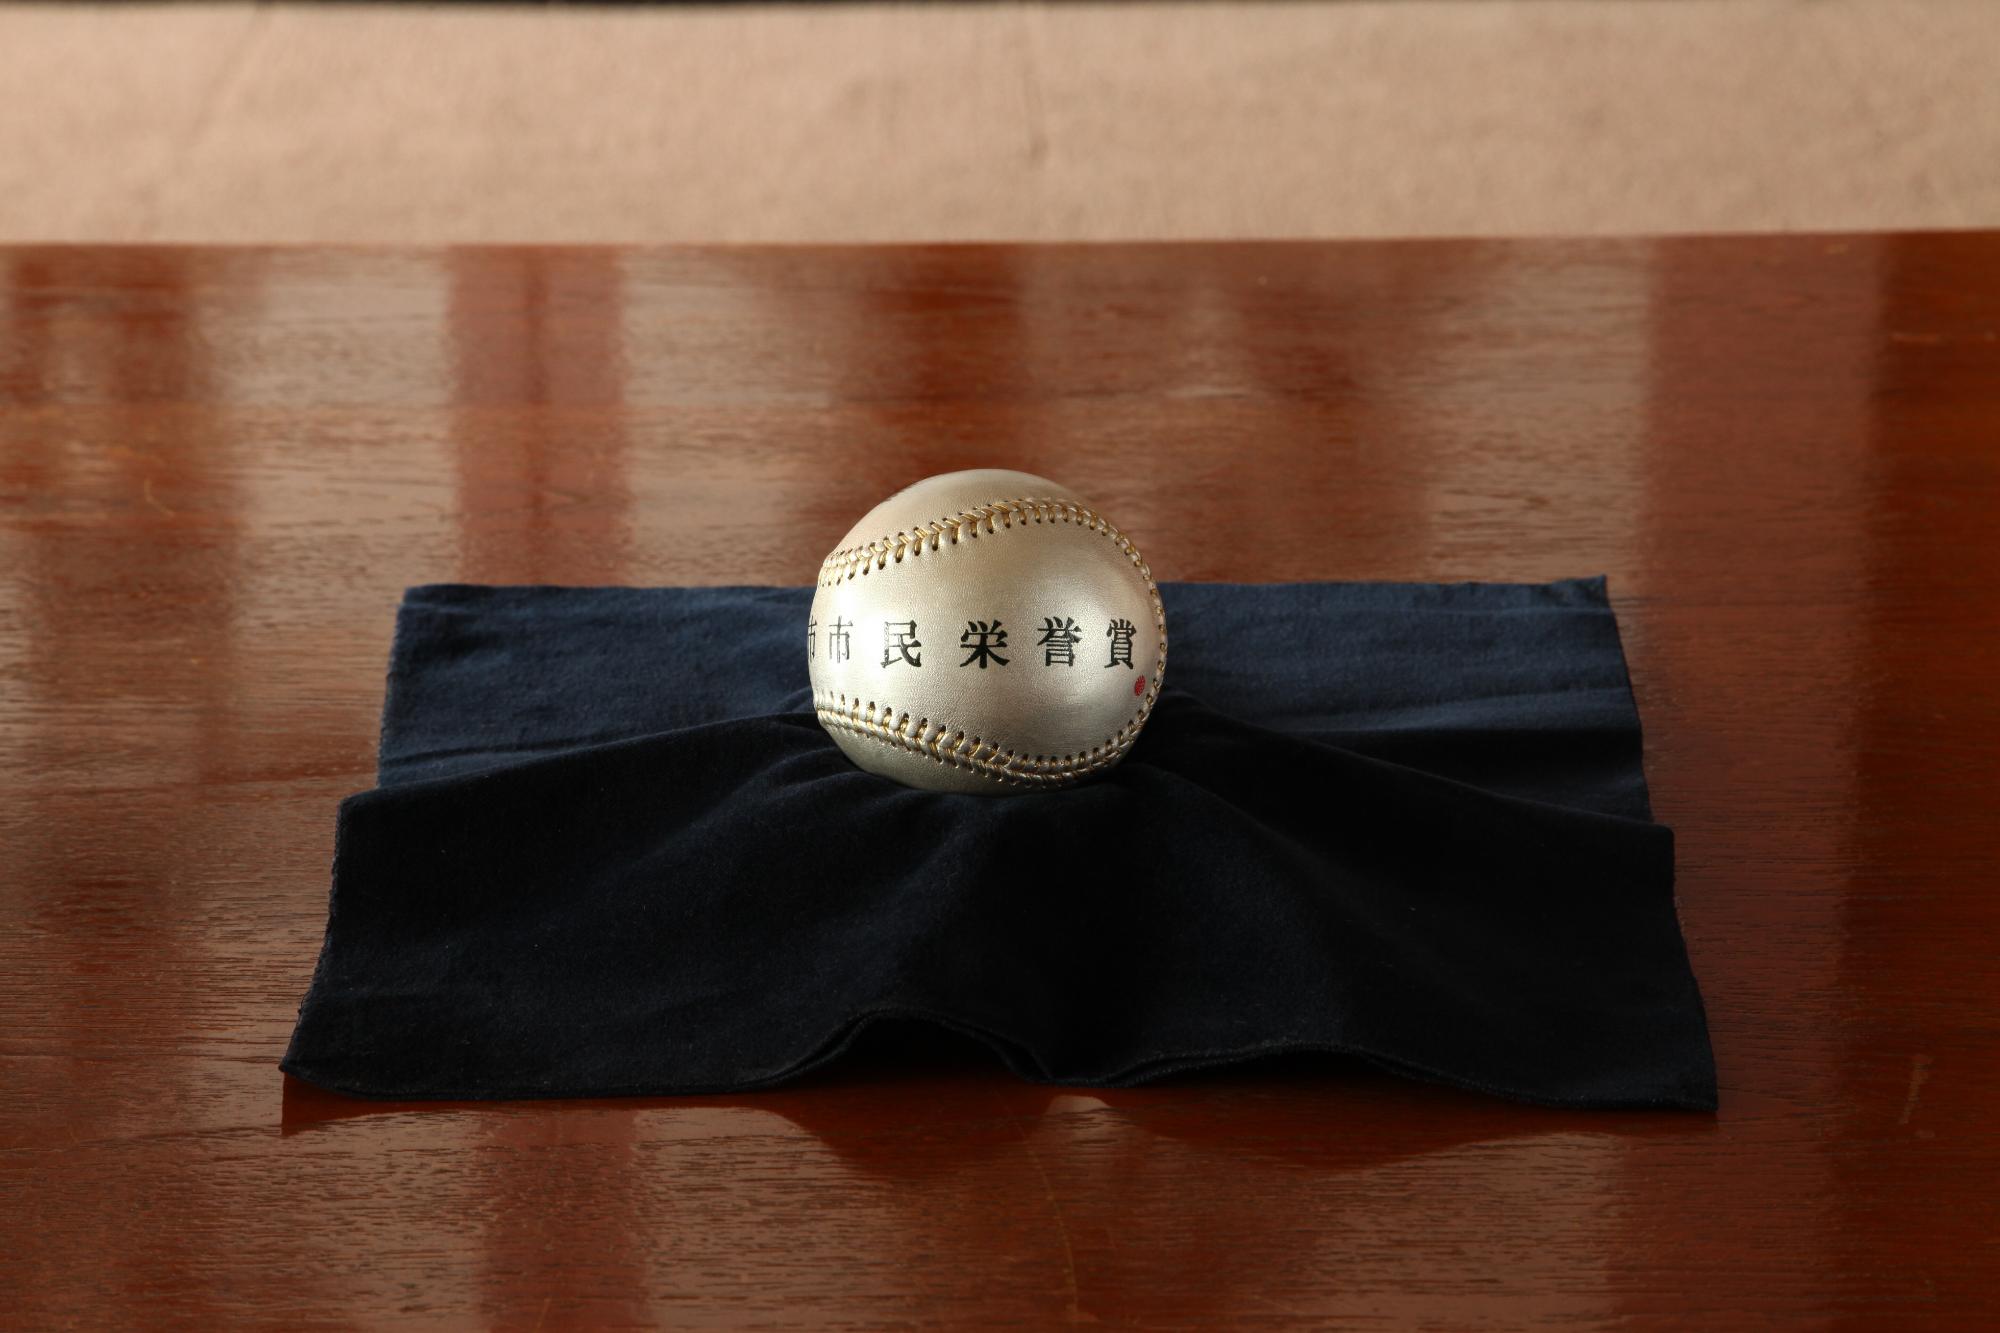 市民栄誉賞と書かれた銀色のボールが黒い布の上に置いてある写真